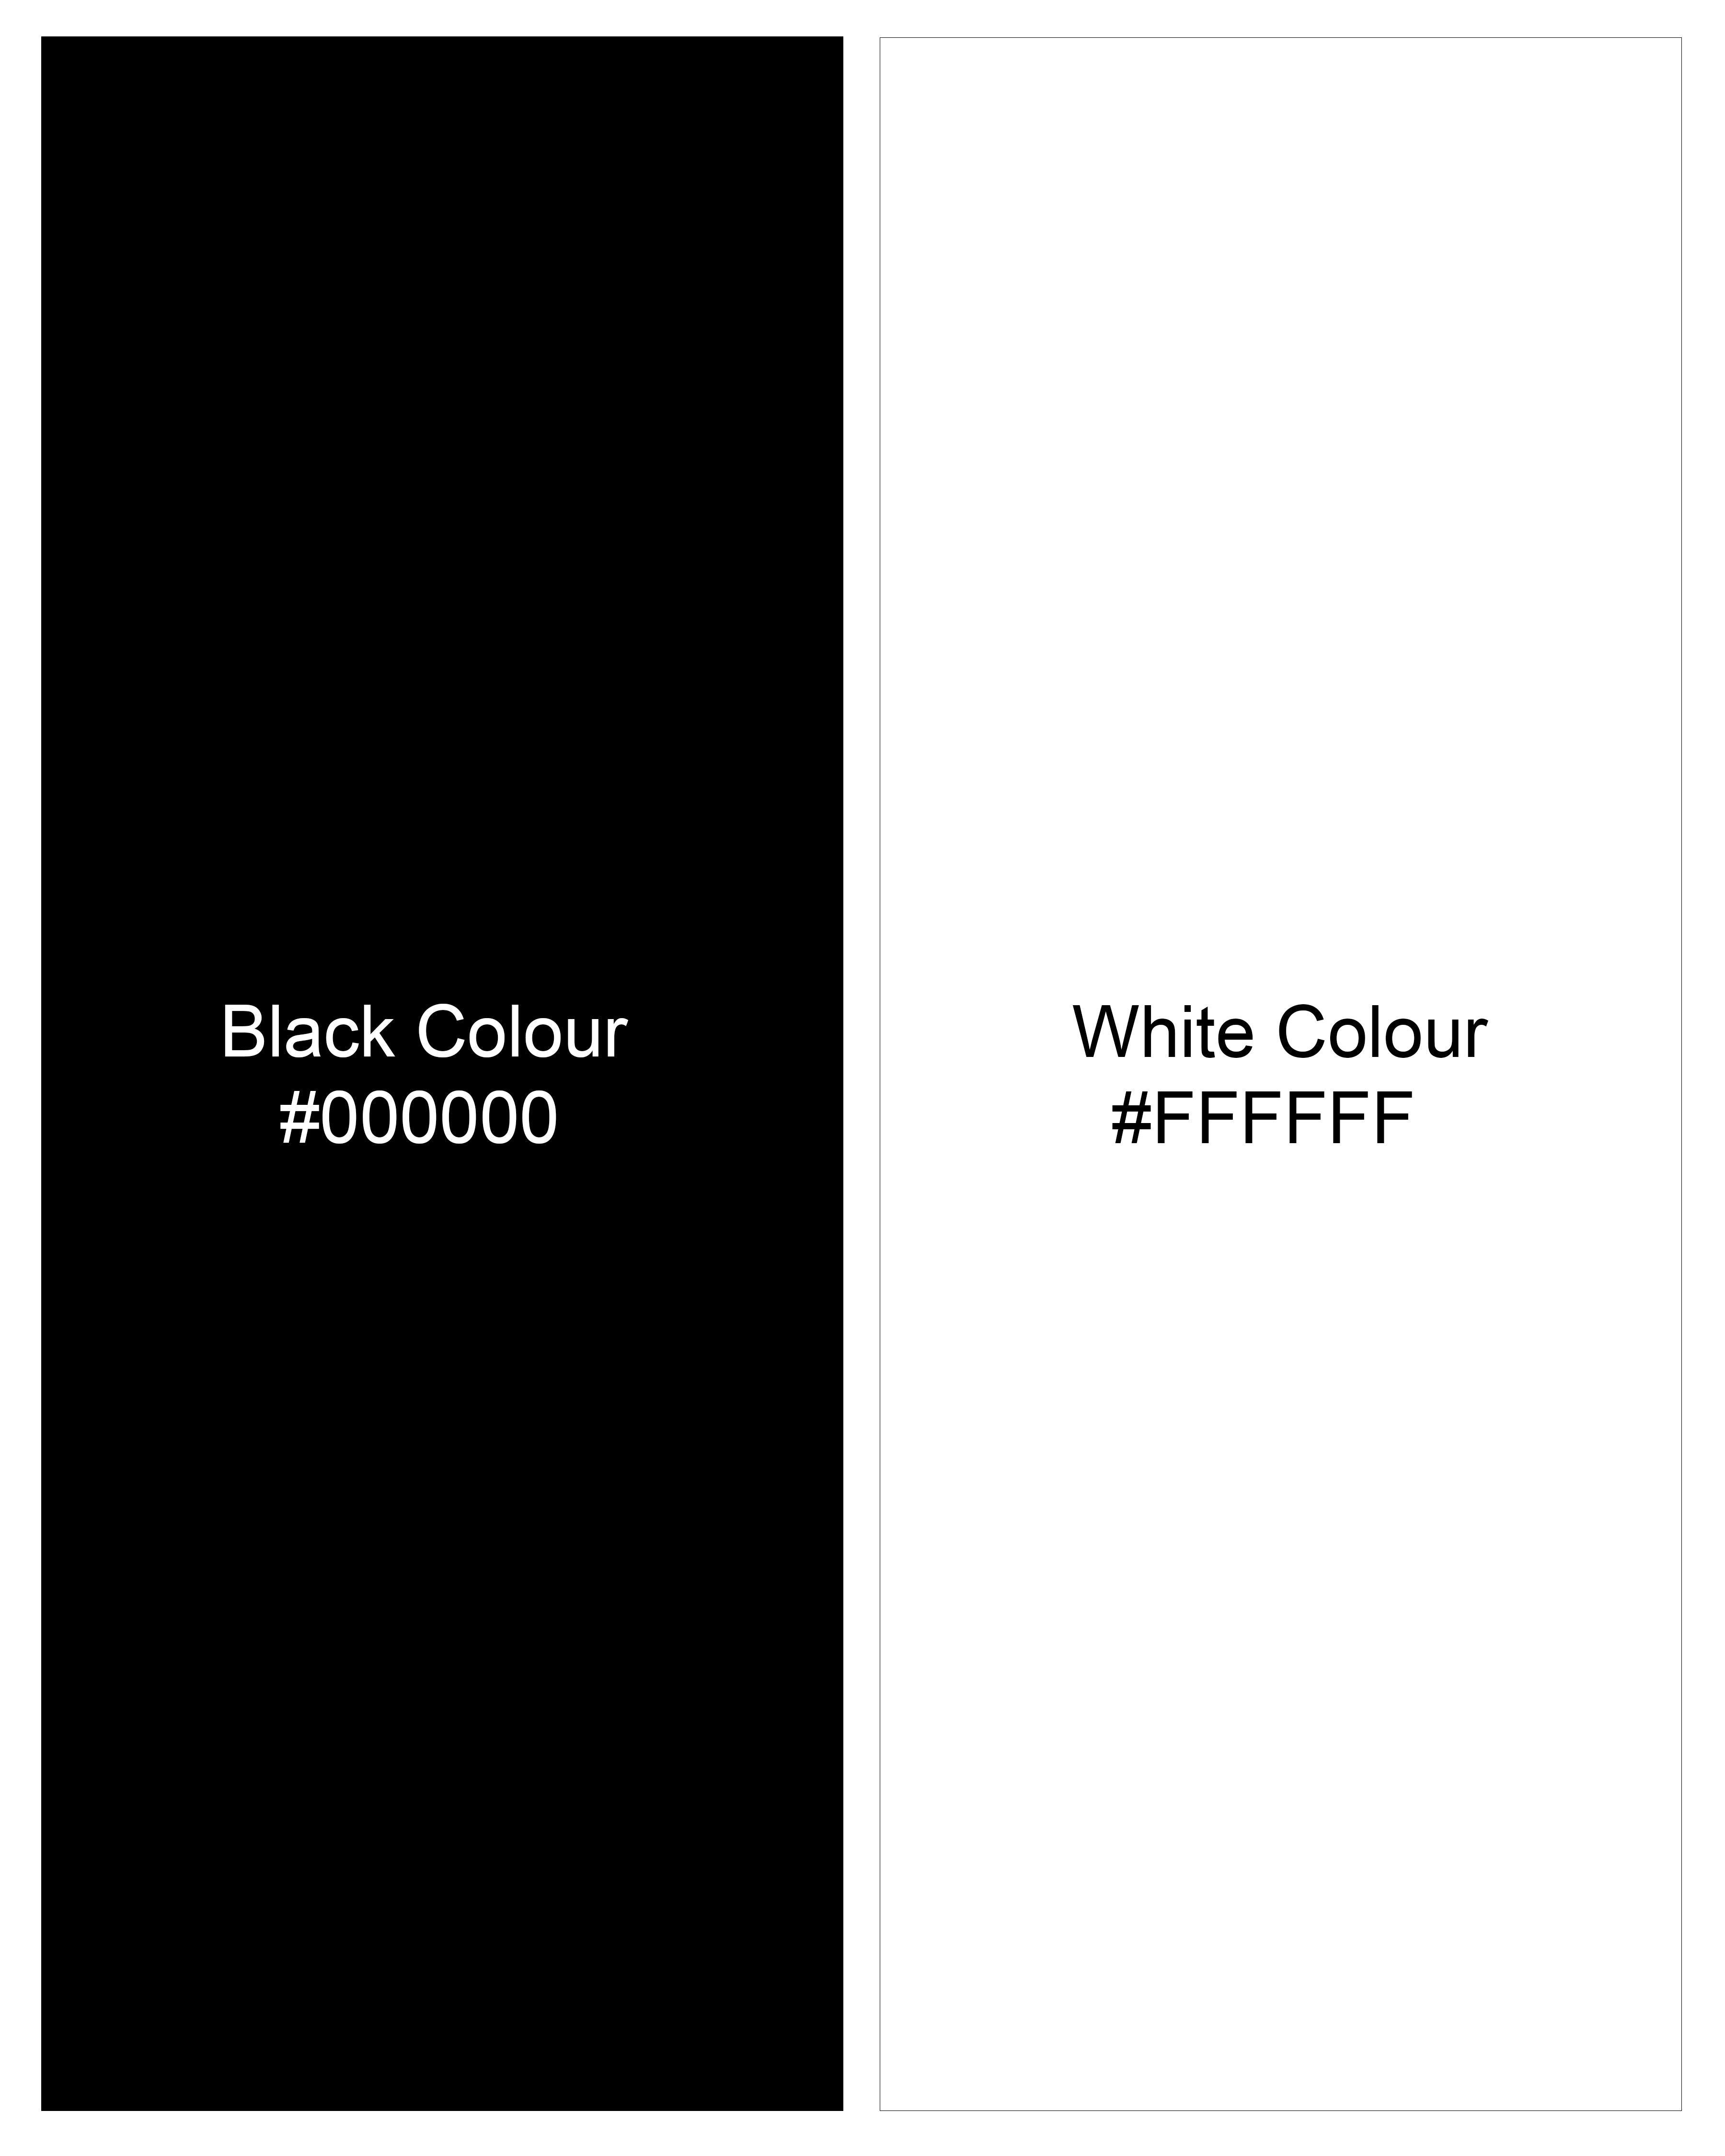 Bright White and Black Twill Checkered Premium Cotton Shirt 9777-BLK-38, 9777-BLK-H-38, 9777-BLK-39, 9777-BLK-H-39, 9777-BLK-40, 9777-BLK-H-40, 9777-BLK-42, 9777-BLK-H-42, 9777-BLK-44, 9777-BLK-H-44, 9777-BLK-46, 9777-BLK-H-46, 9777-BLK-48, 9777-BLK-H-48, 9777-BLK-50, 9777-BLK-H-50, 9777-BLK-52, 9777-BLK-H-52